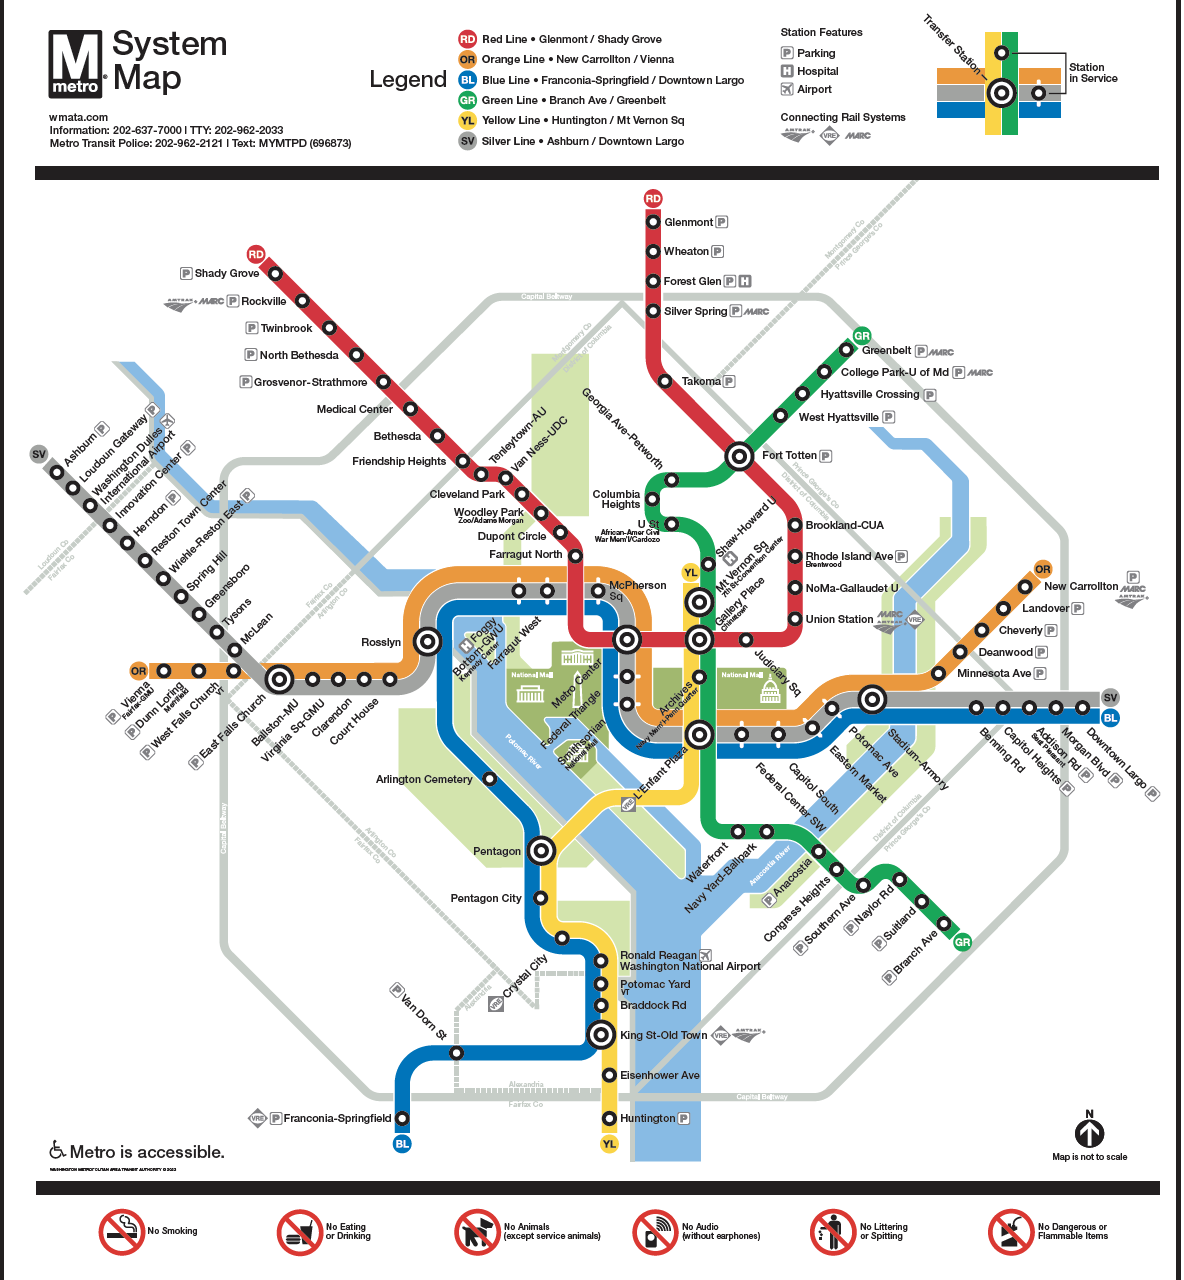 Mappa della metropolitana di Washington, DC